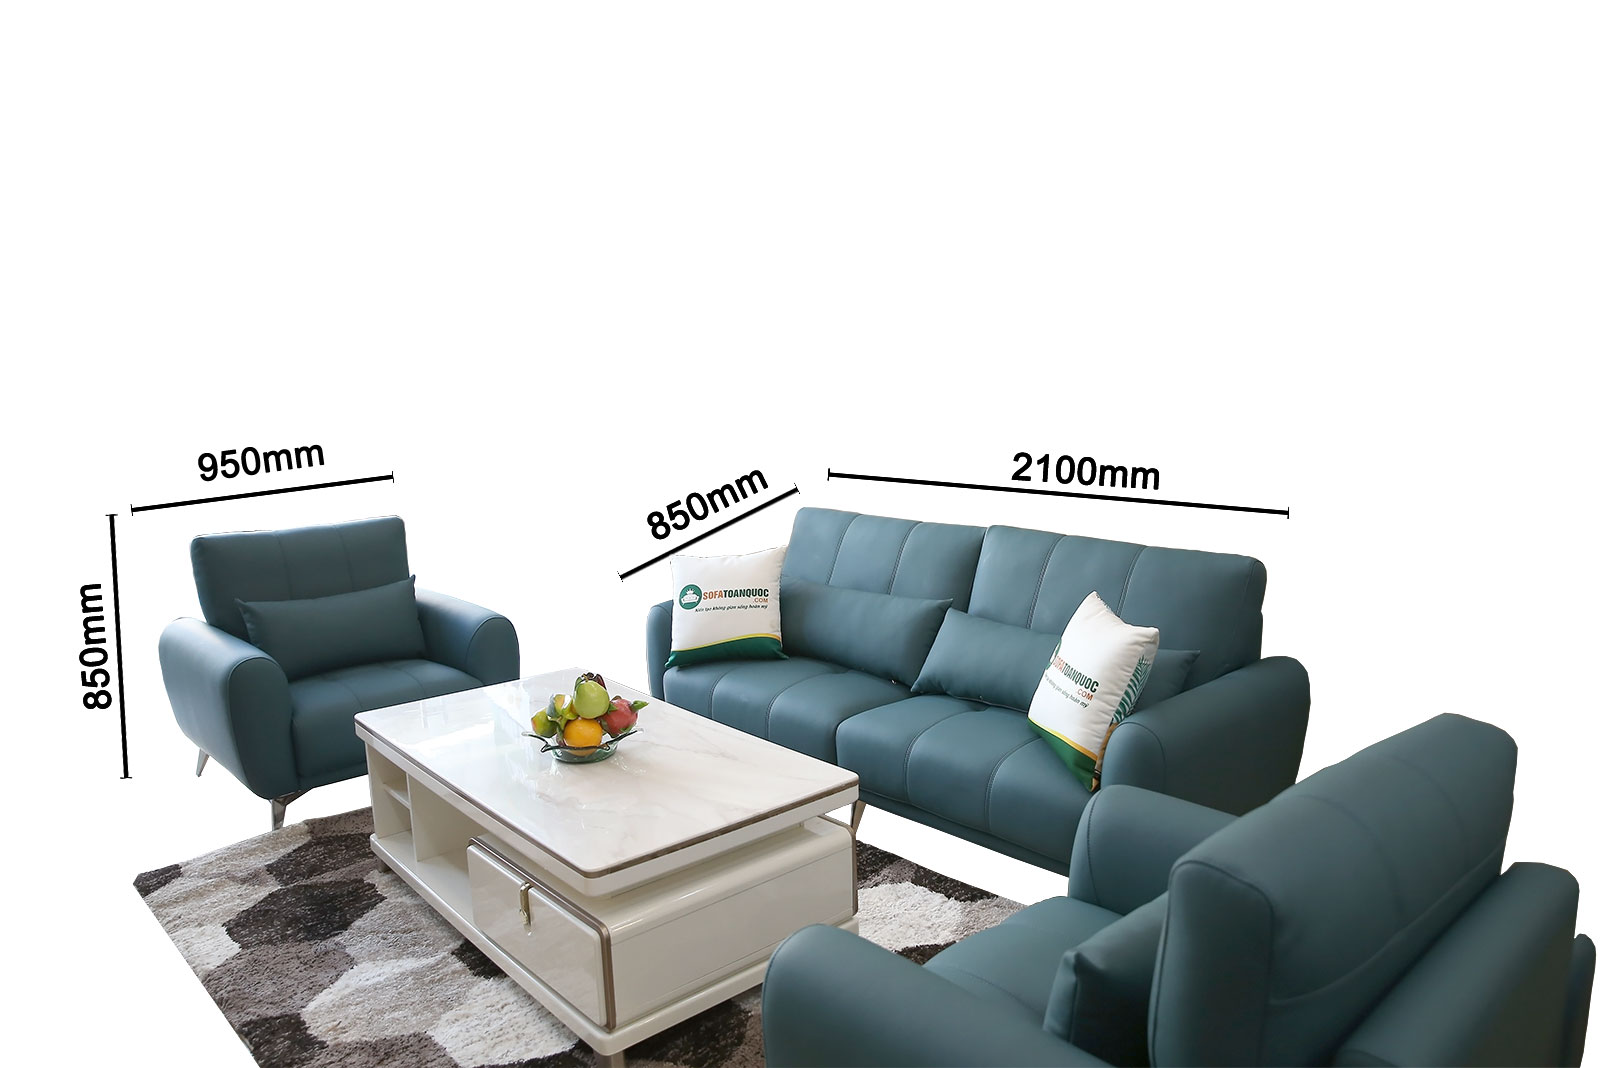 Mẫu bàn ghế phòng khách bọc da cao cấp màu xanh mã M20